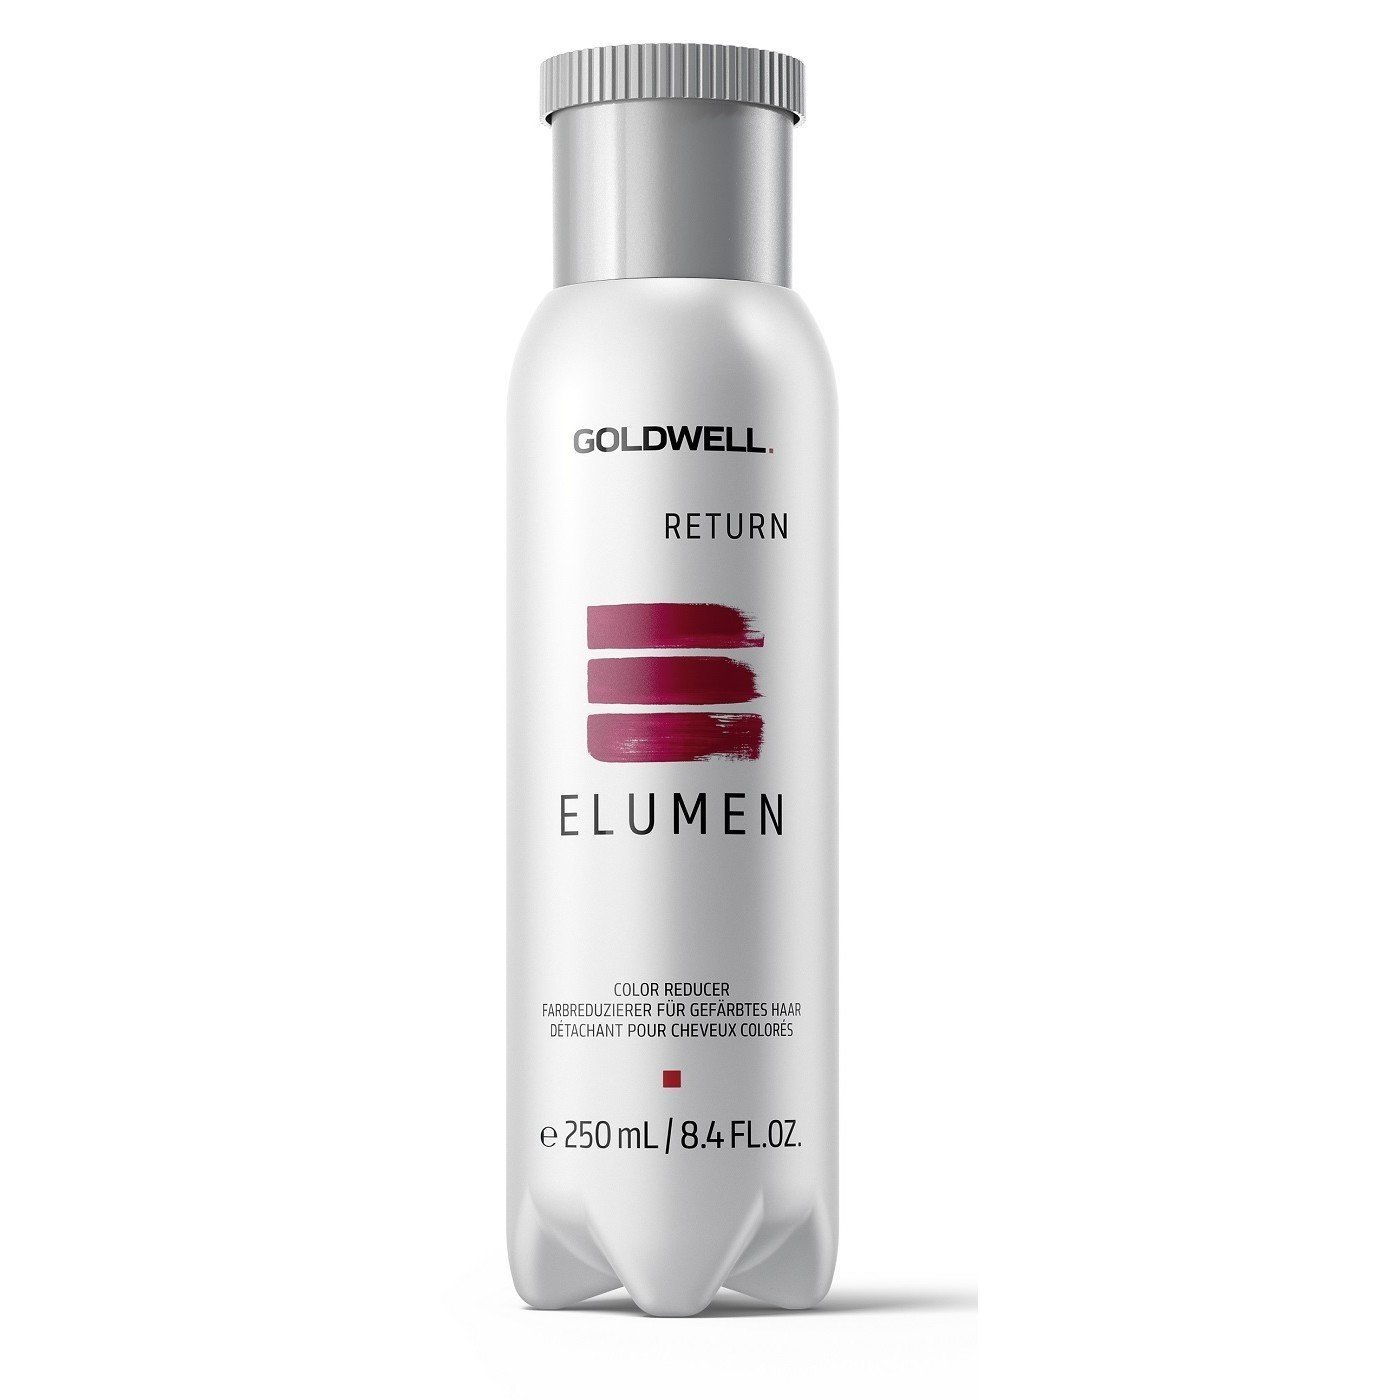 GOLDWELL - ELUMEN Return Détachant pour Cheveux Colorés 250ml (8.4 oz)